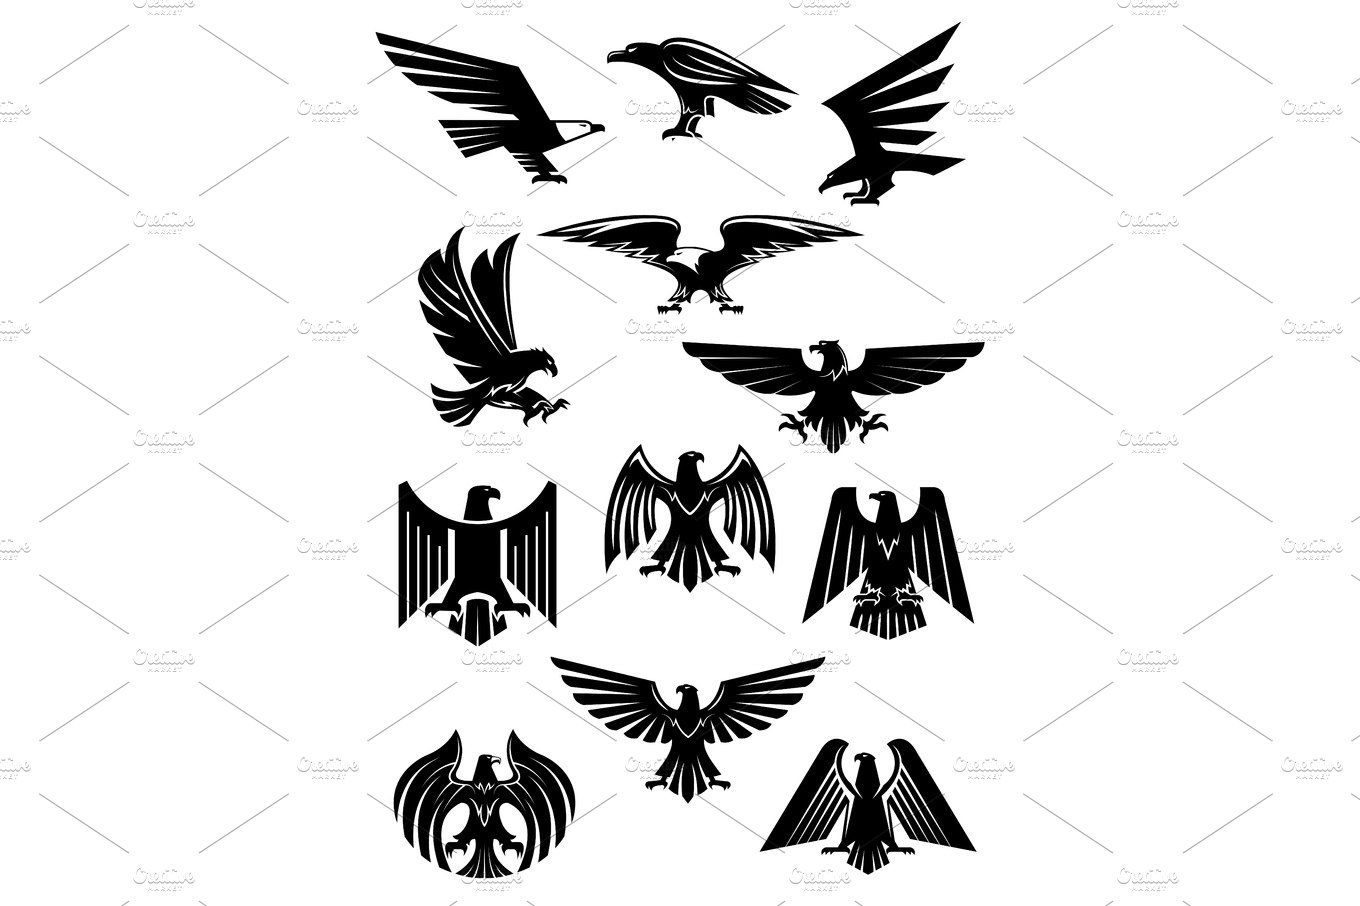 Eagle or falcon, aquila or hawk heraldic badge cover image.